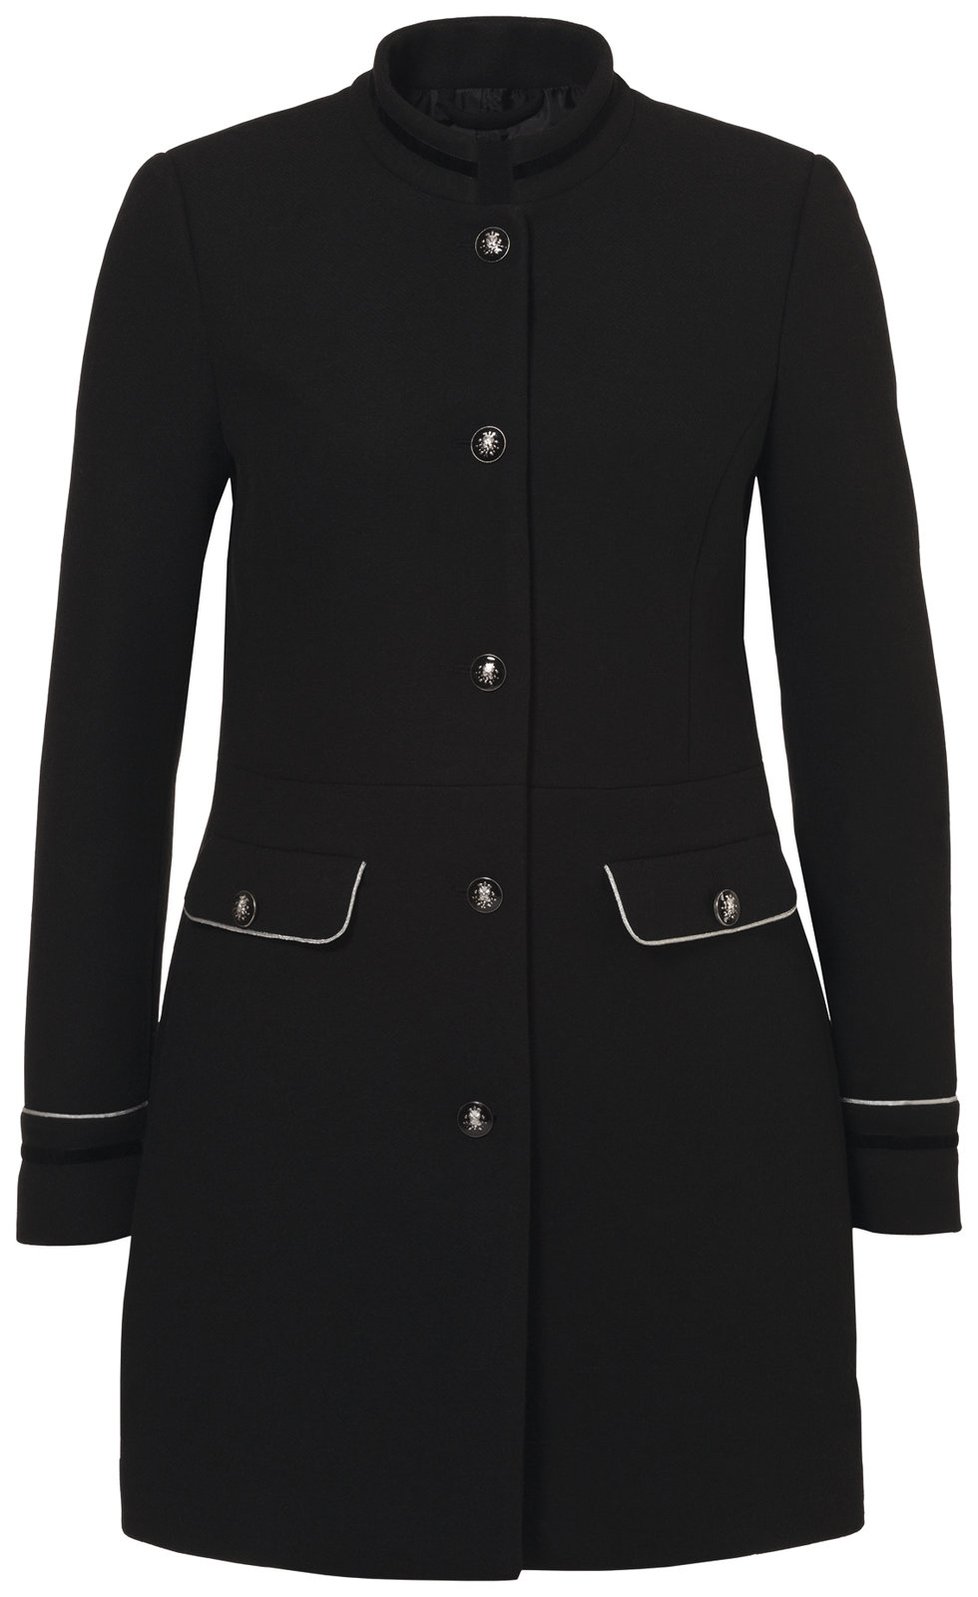 Černý kabát vojenského střihu, prodává C&A Moda, cena: 1398 Kč